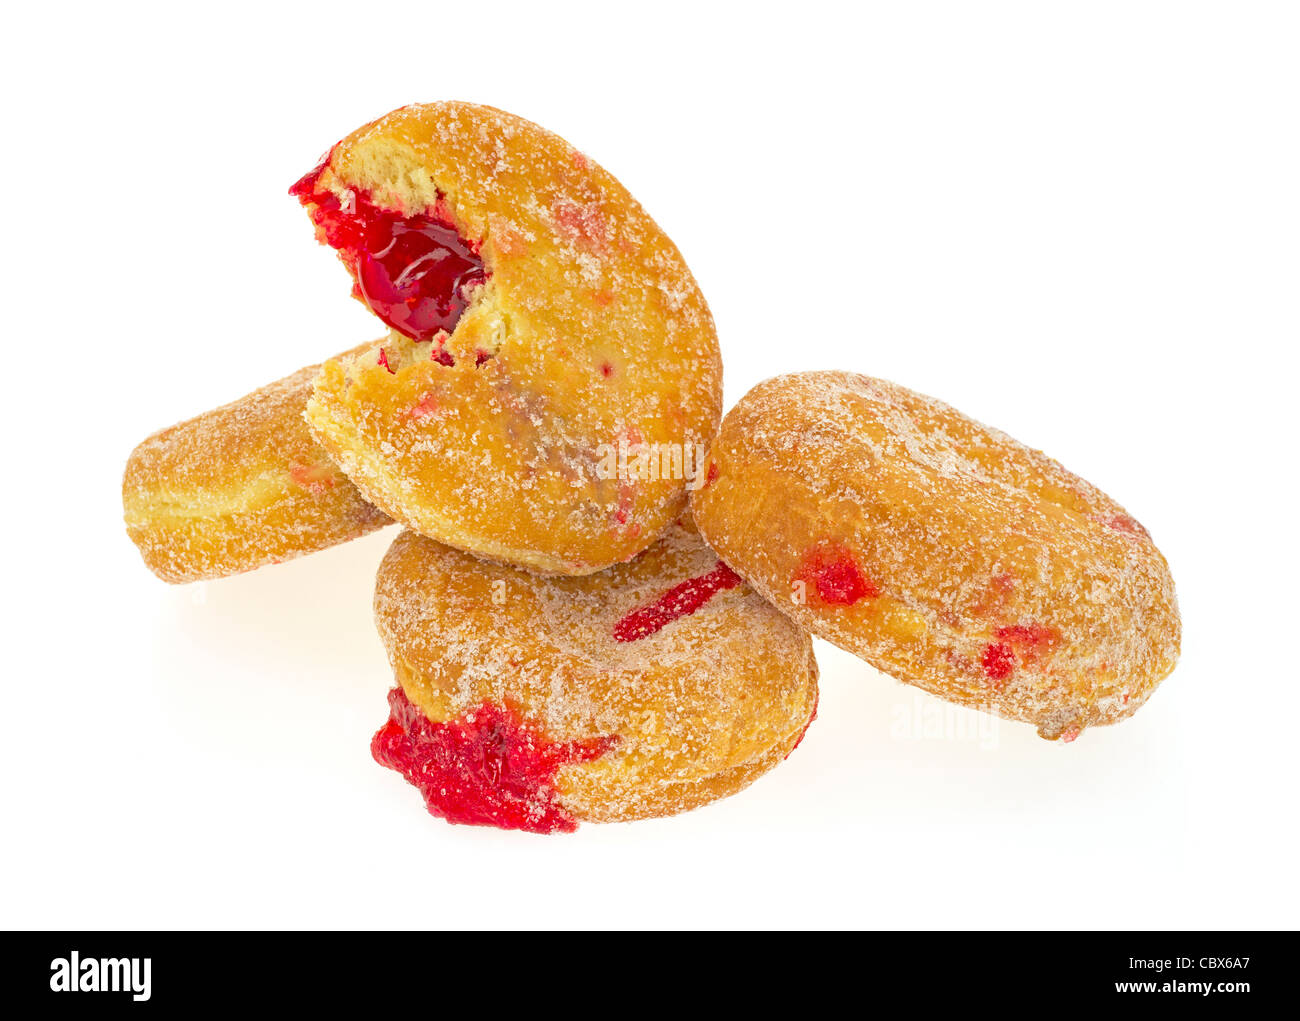 Groupe de jelly donuts avec un mordu Banque D'Images